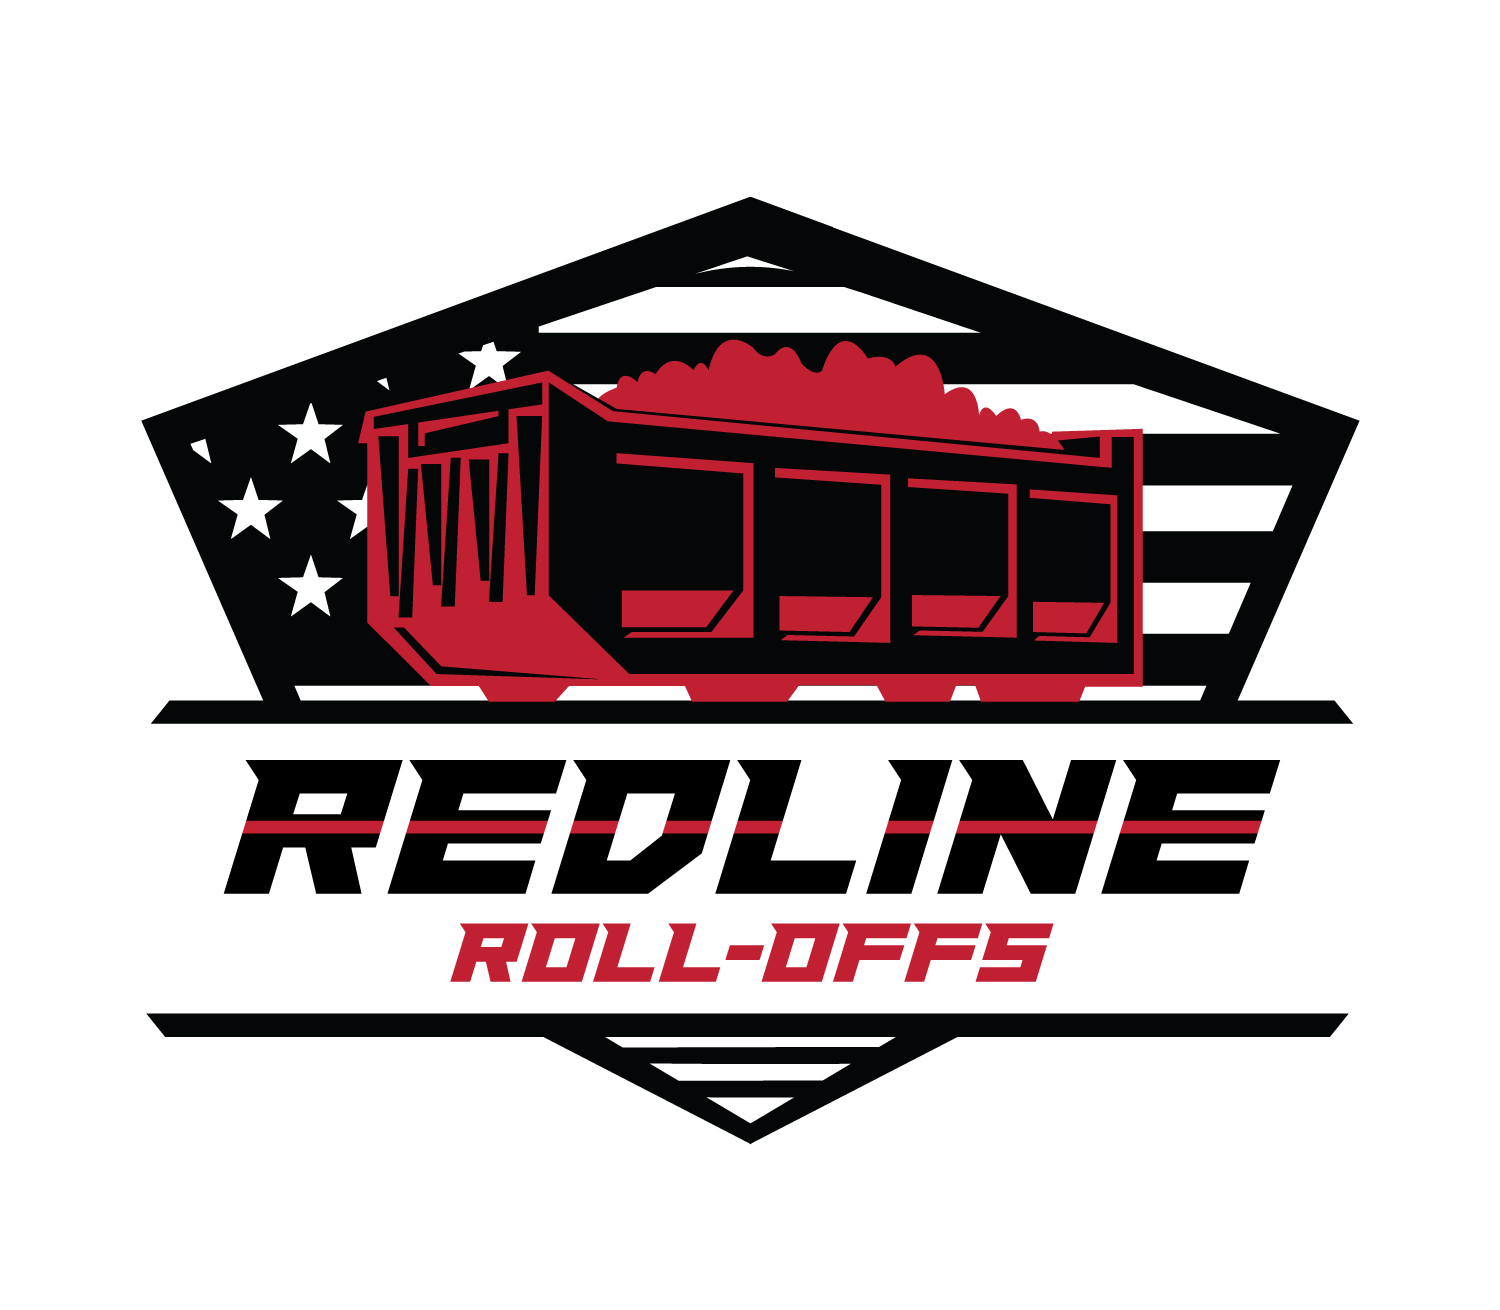 redline